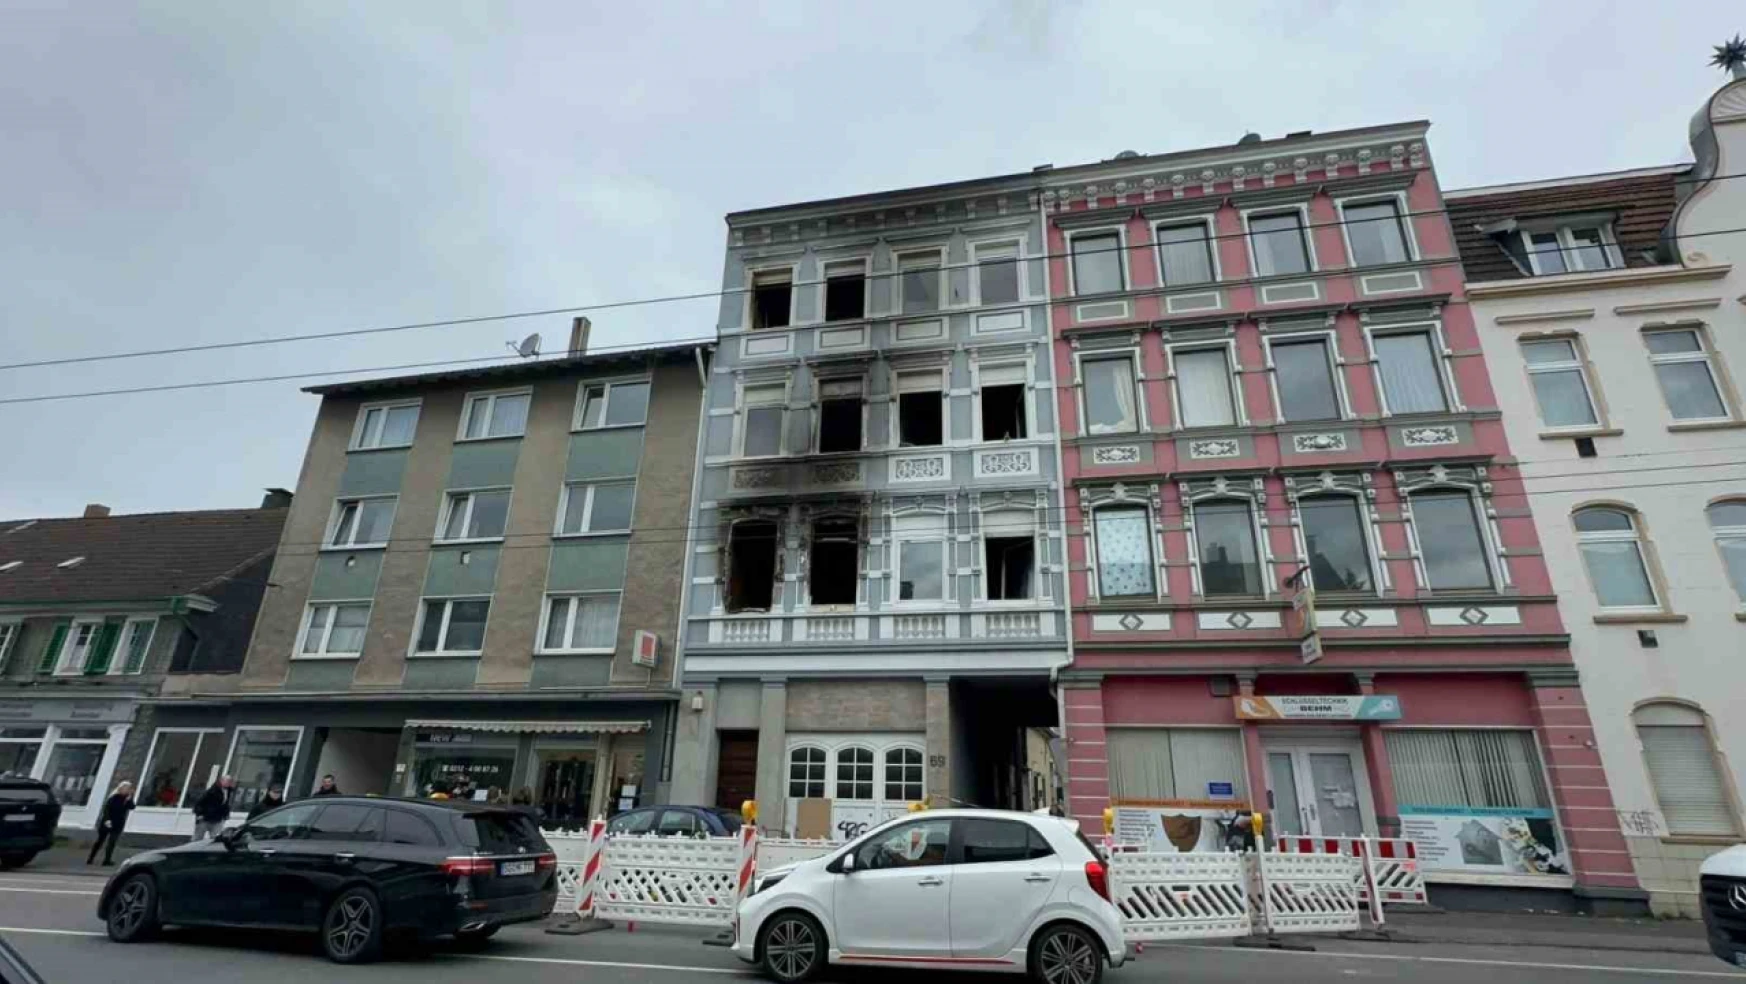 Solingen'de Türklerin yaşadığı bina kundaklandı: 2'si çocuk 4 ölü, 9 yaralı